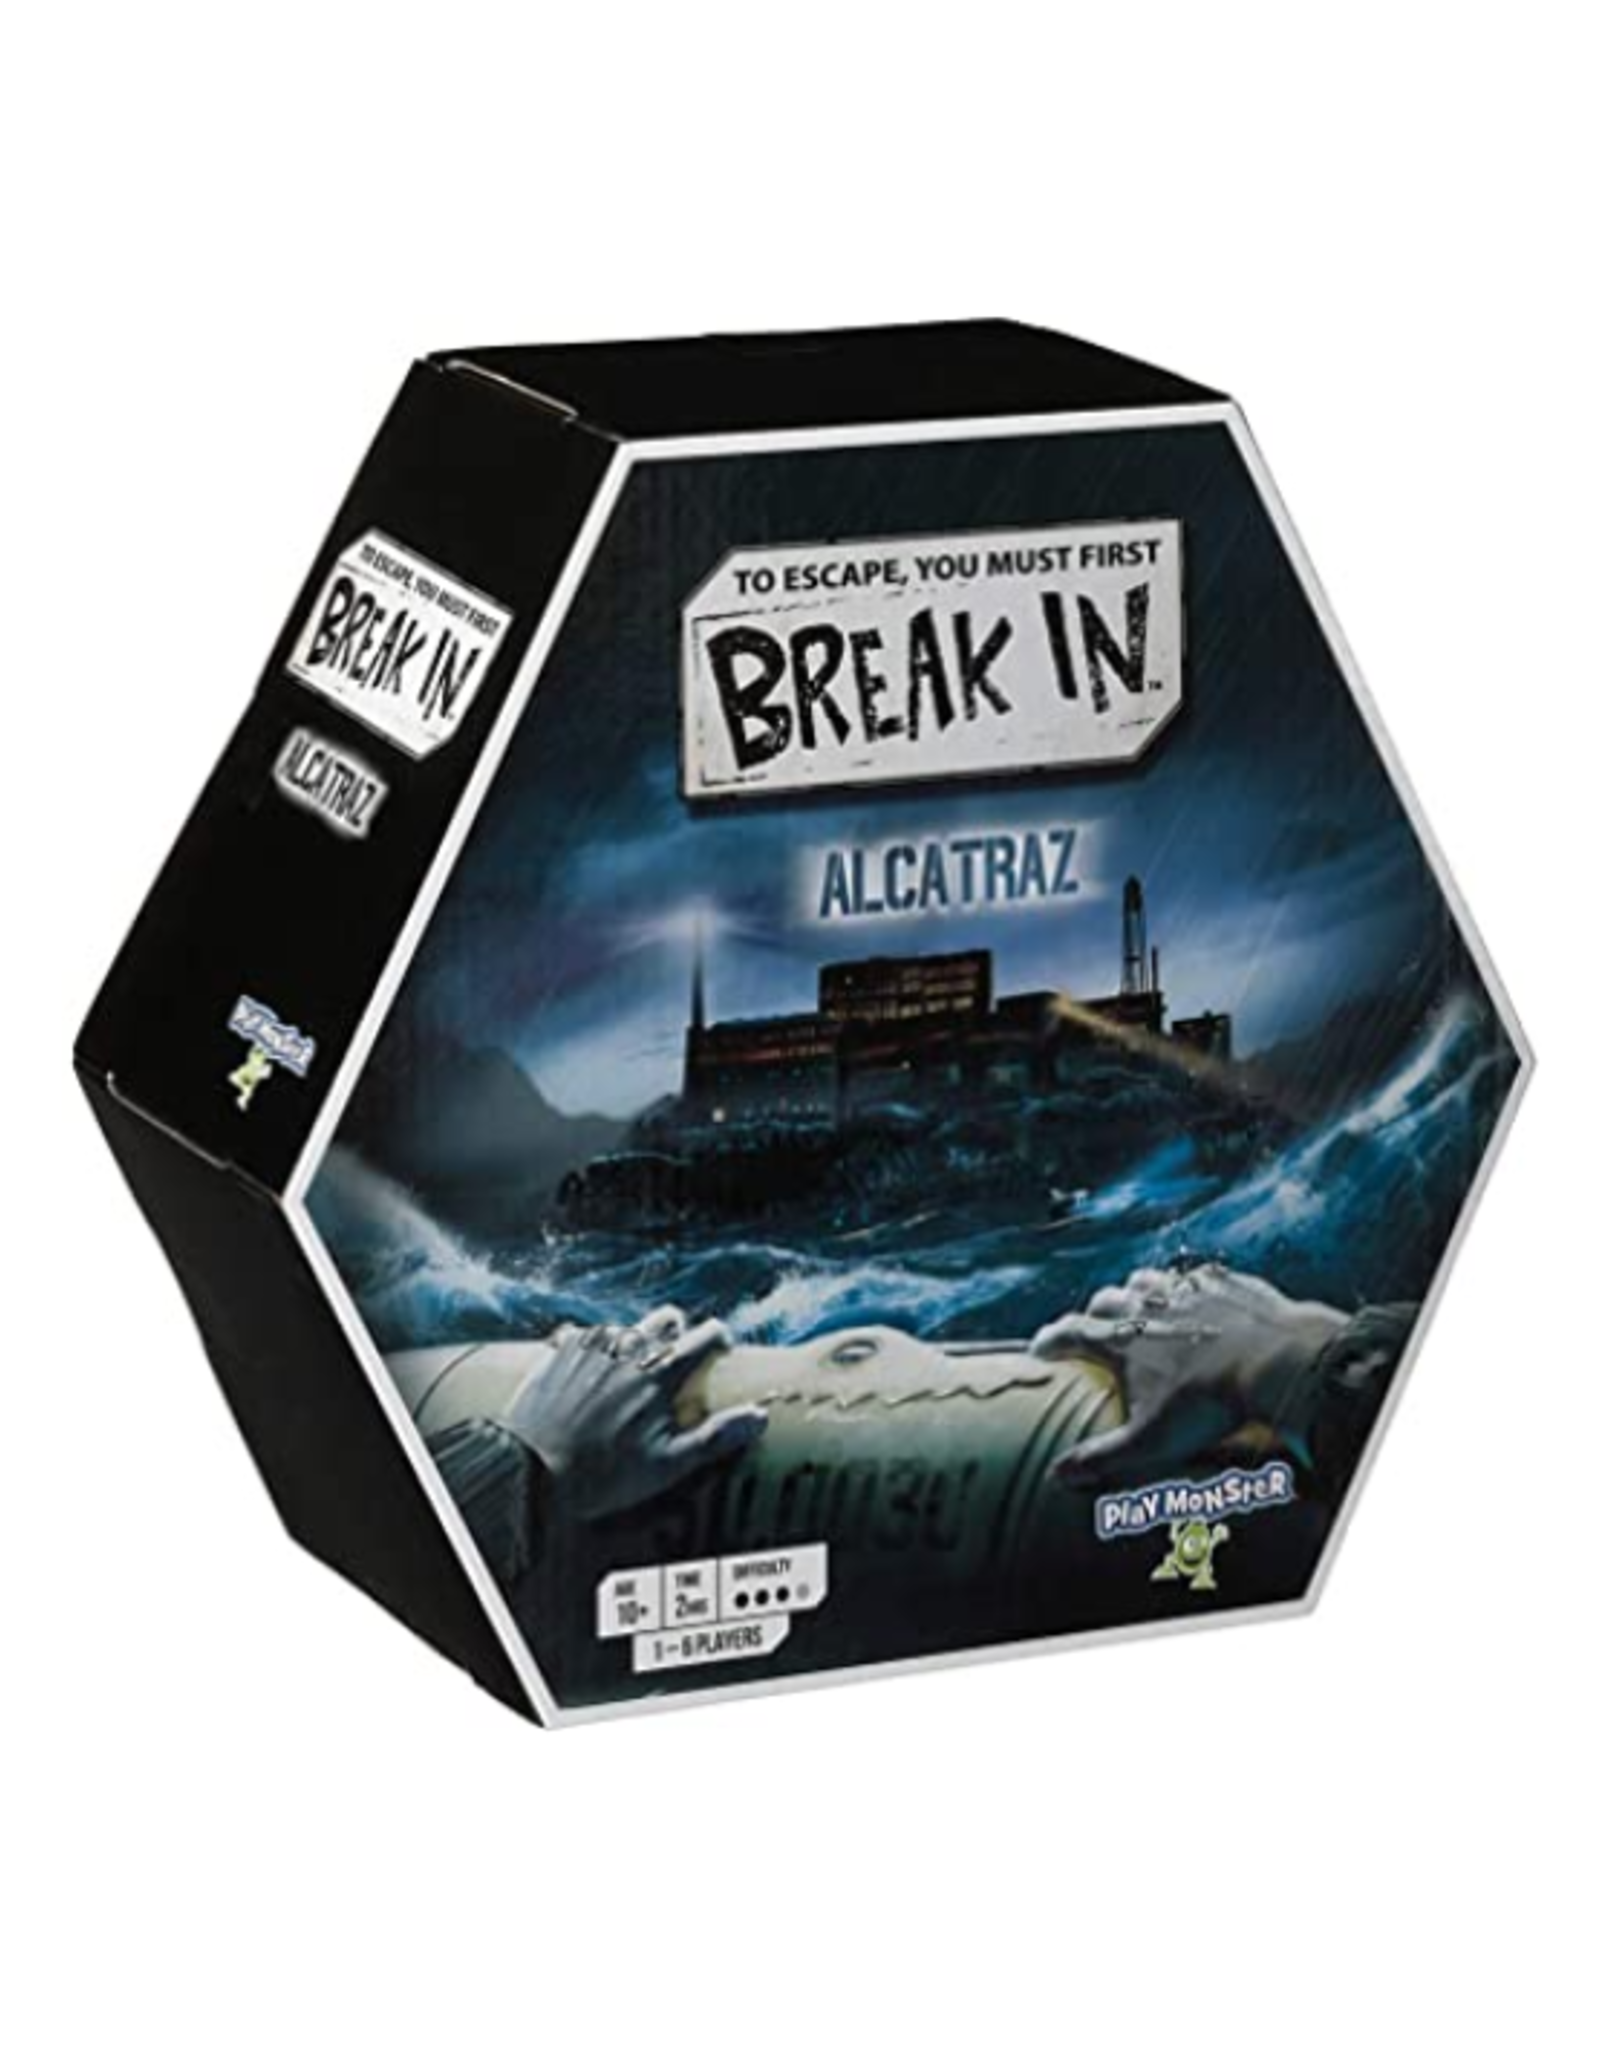 Play Monster Play Monster - Break in Alcatraz